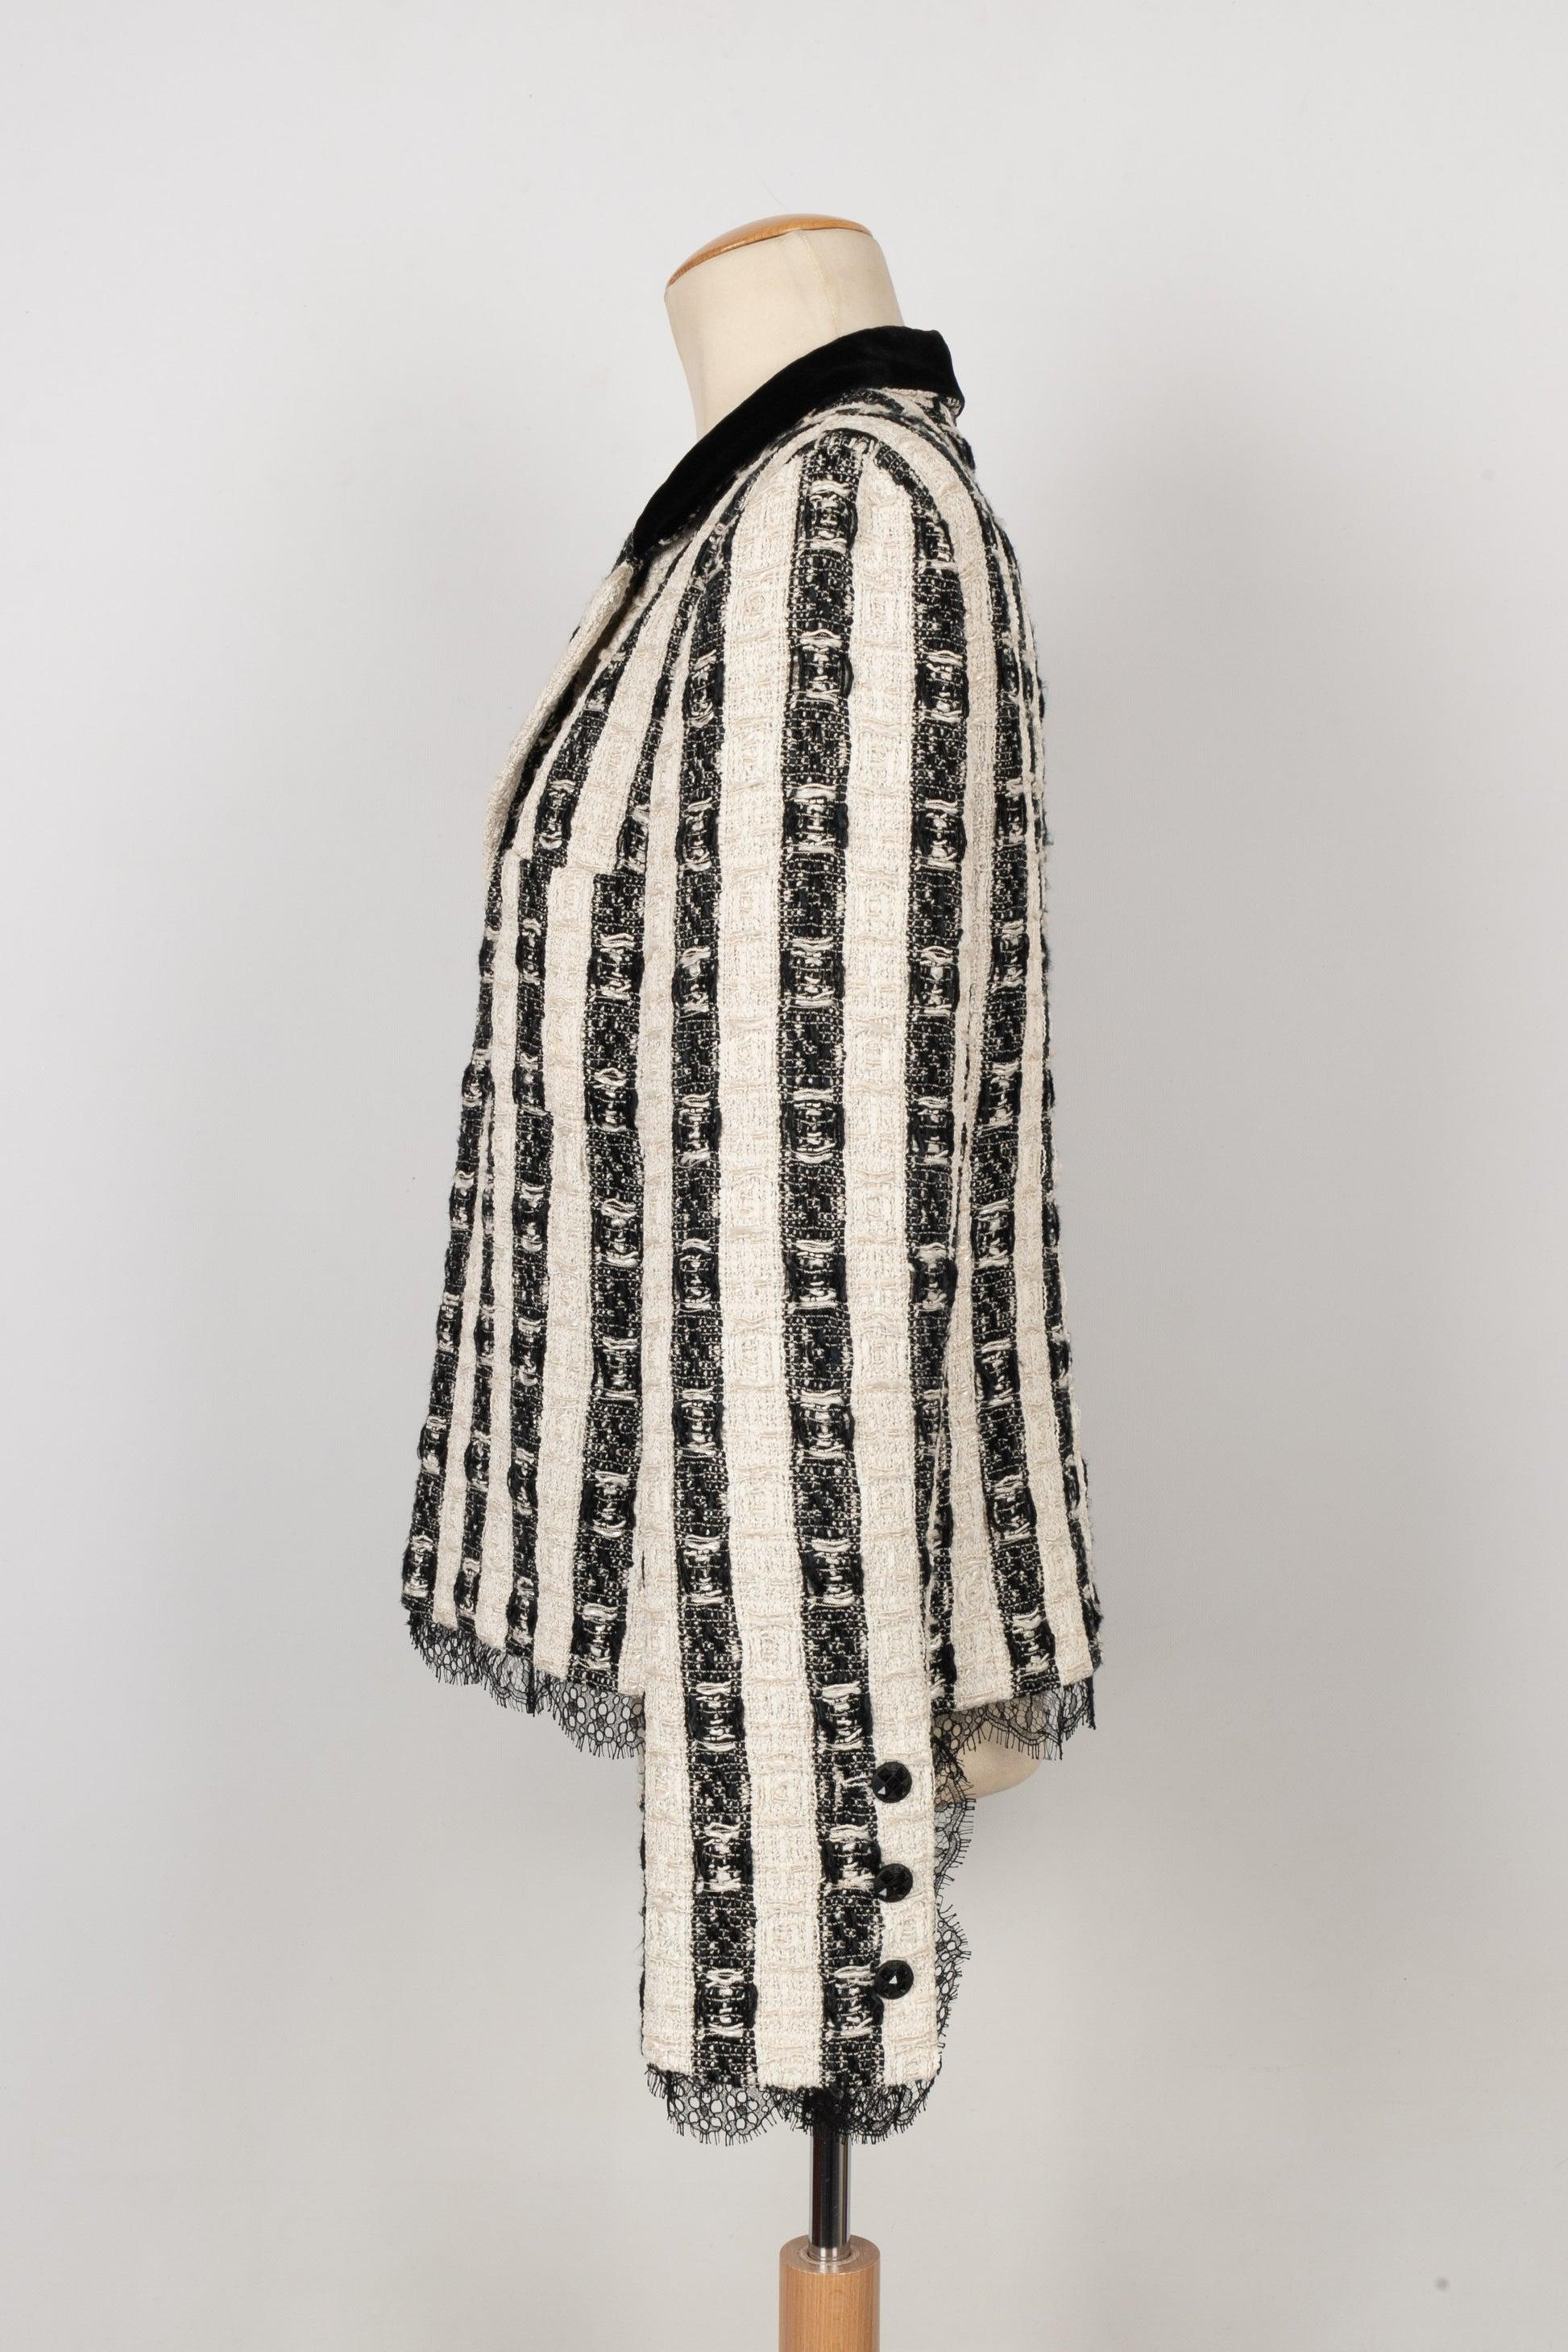 Chanel - (Made in France) Veste noire et blanche, avec col en velours, doublure en soie et dentelle noire. Taille indiquée 42FR.

Informations complémentaires :
Condit : Très bon état.
Dimensions : Largeur des épaules : 41 cm - Poitrine : 50 cm -